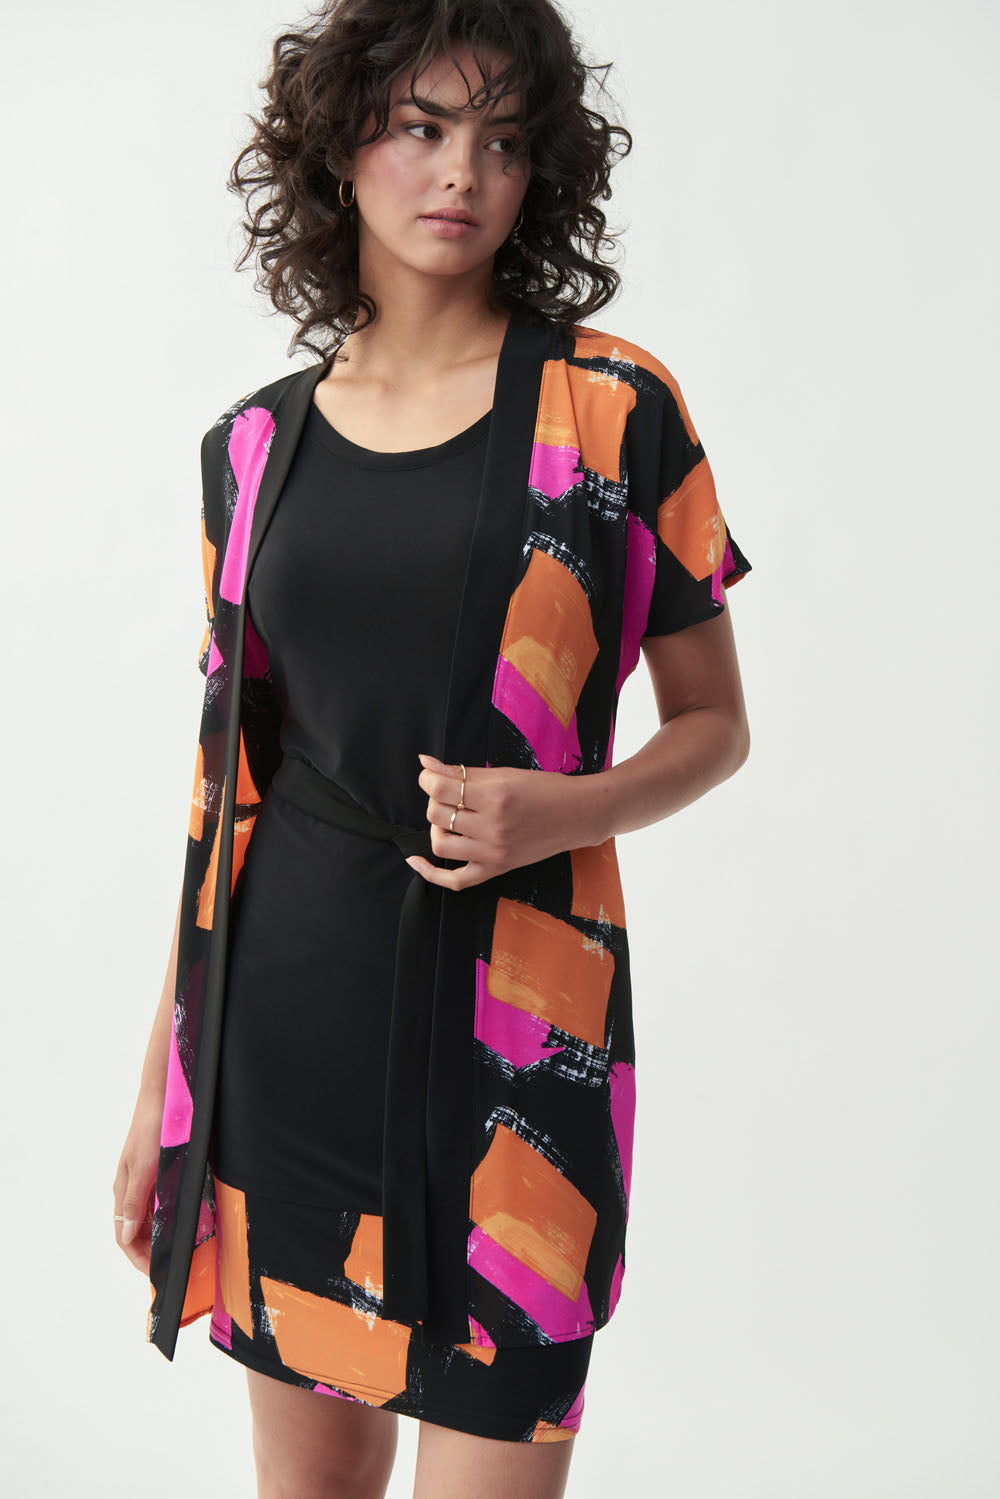 Joseph Ribkoff Black-Multi Multi-Coloured Dress Style 221059